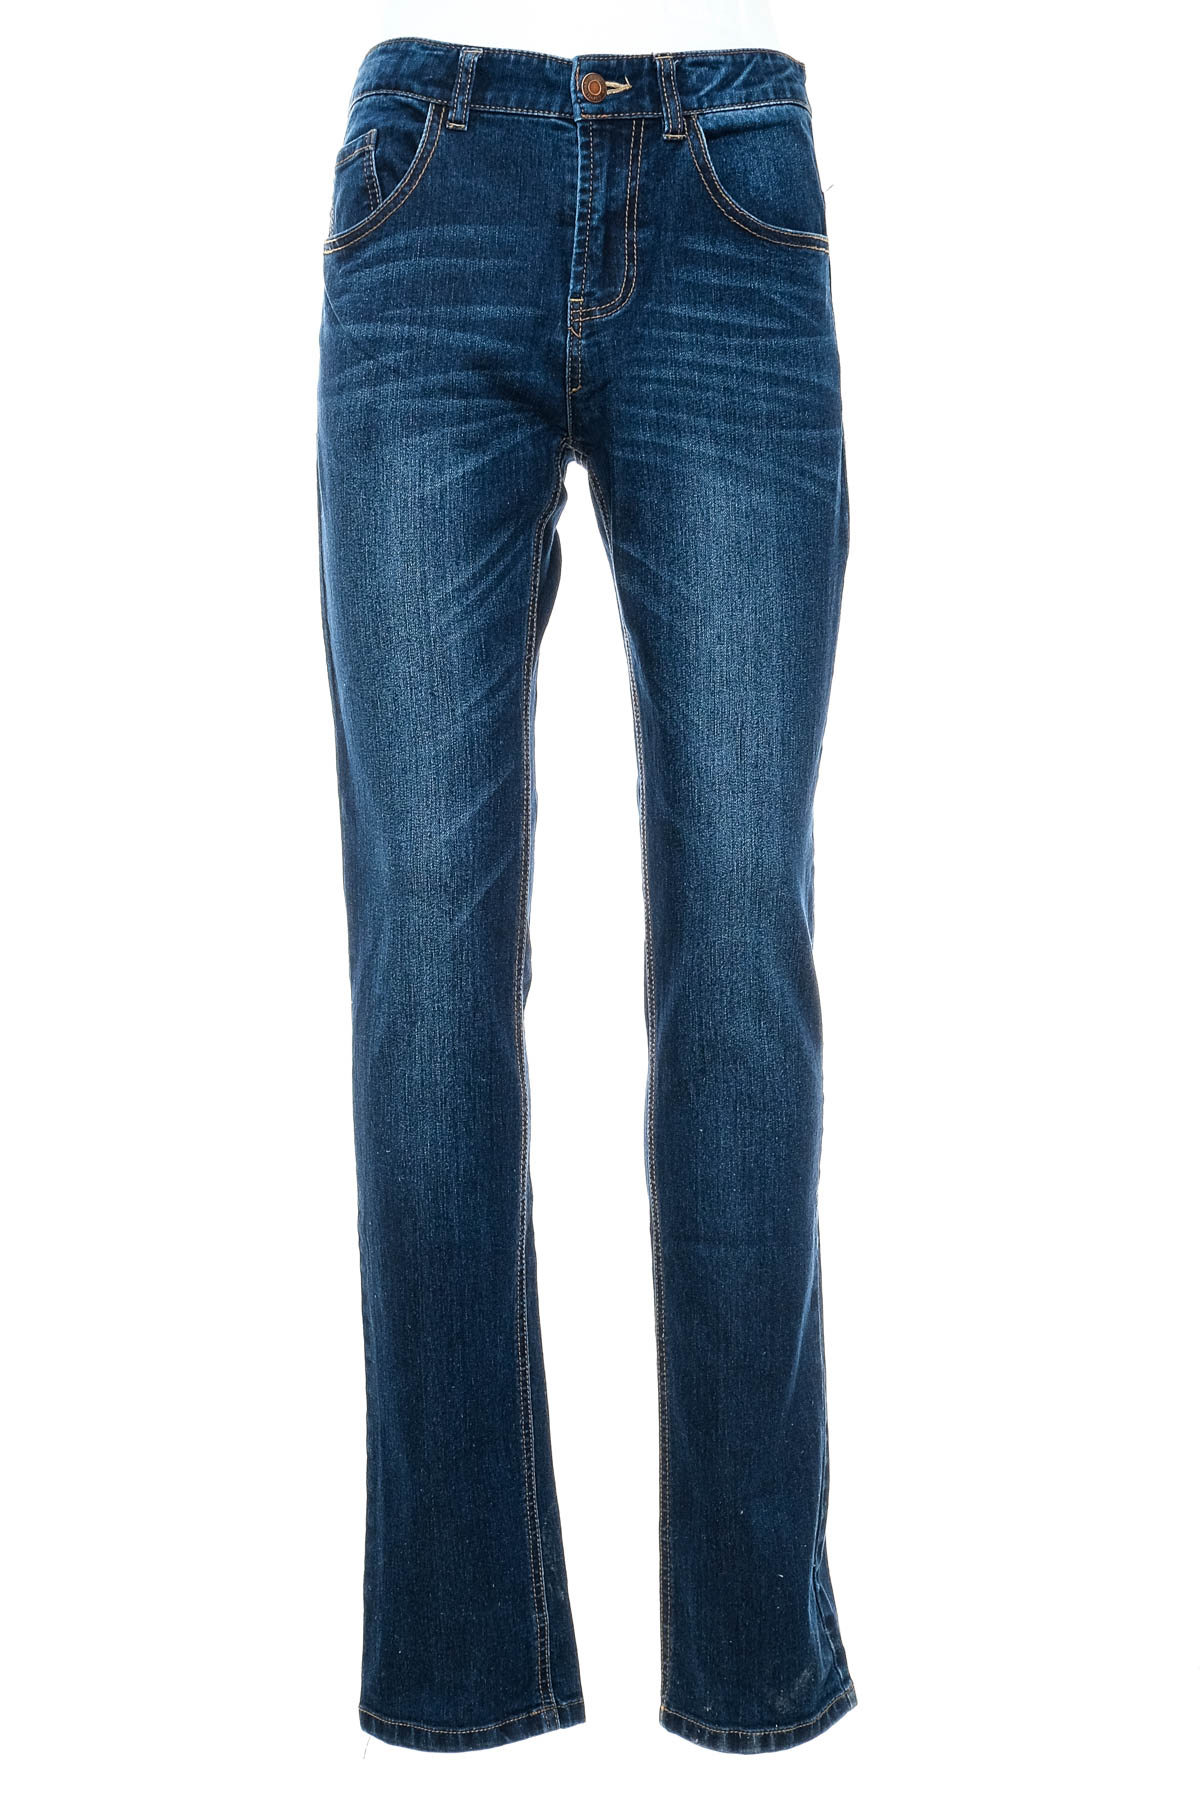 Boy jeans - ESPRIT - 0